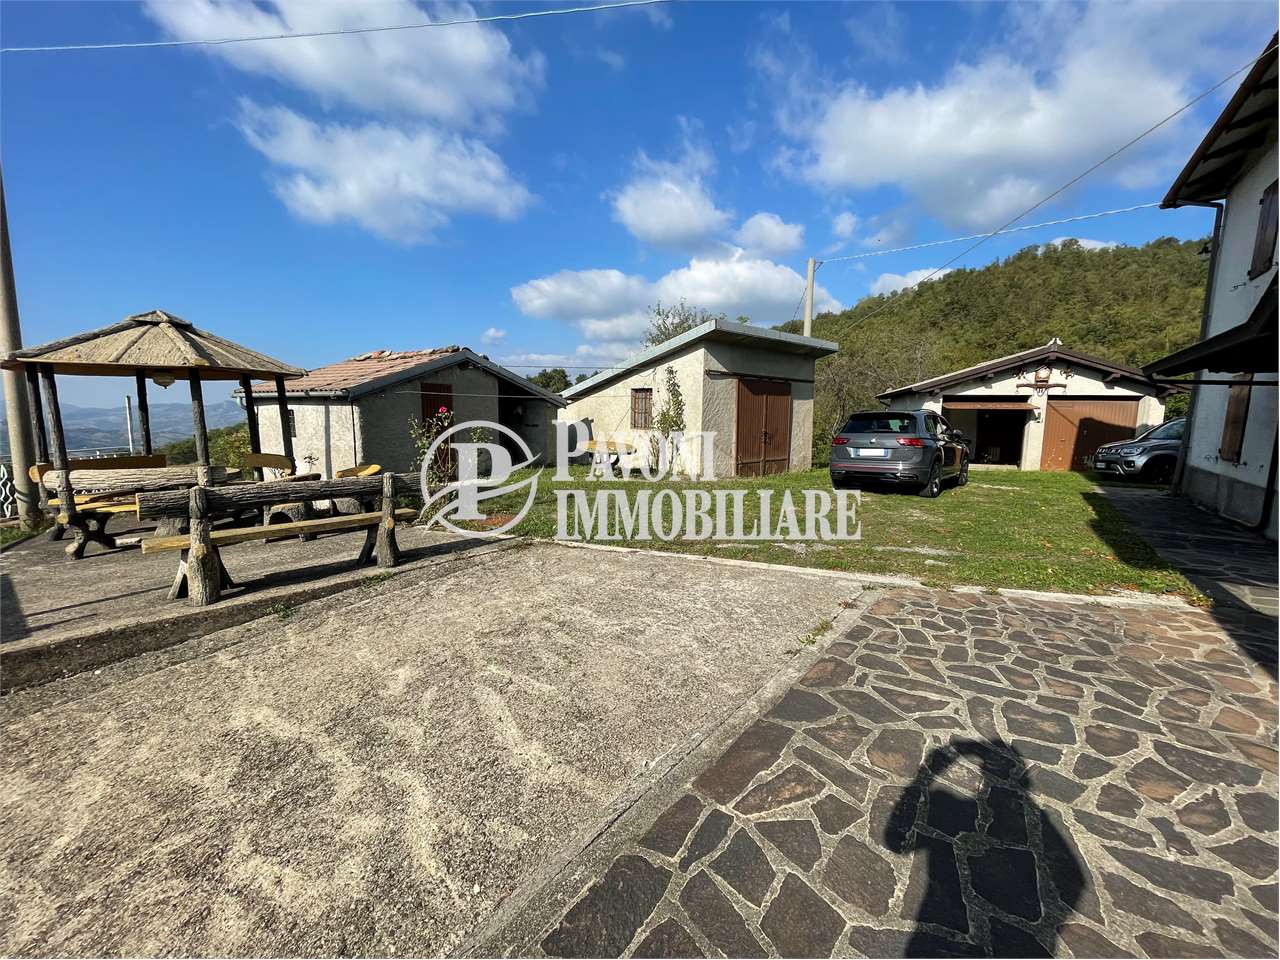 Villa in vendita a Lizzano in Belvedere, 10 locali, prezzo € 119.000 | PortaleAgenzieImmobiliari.it